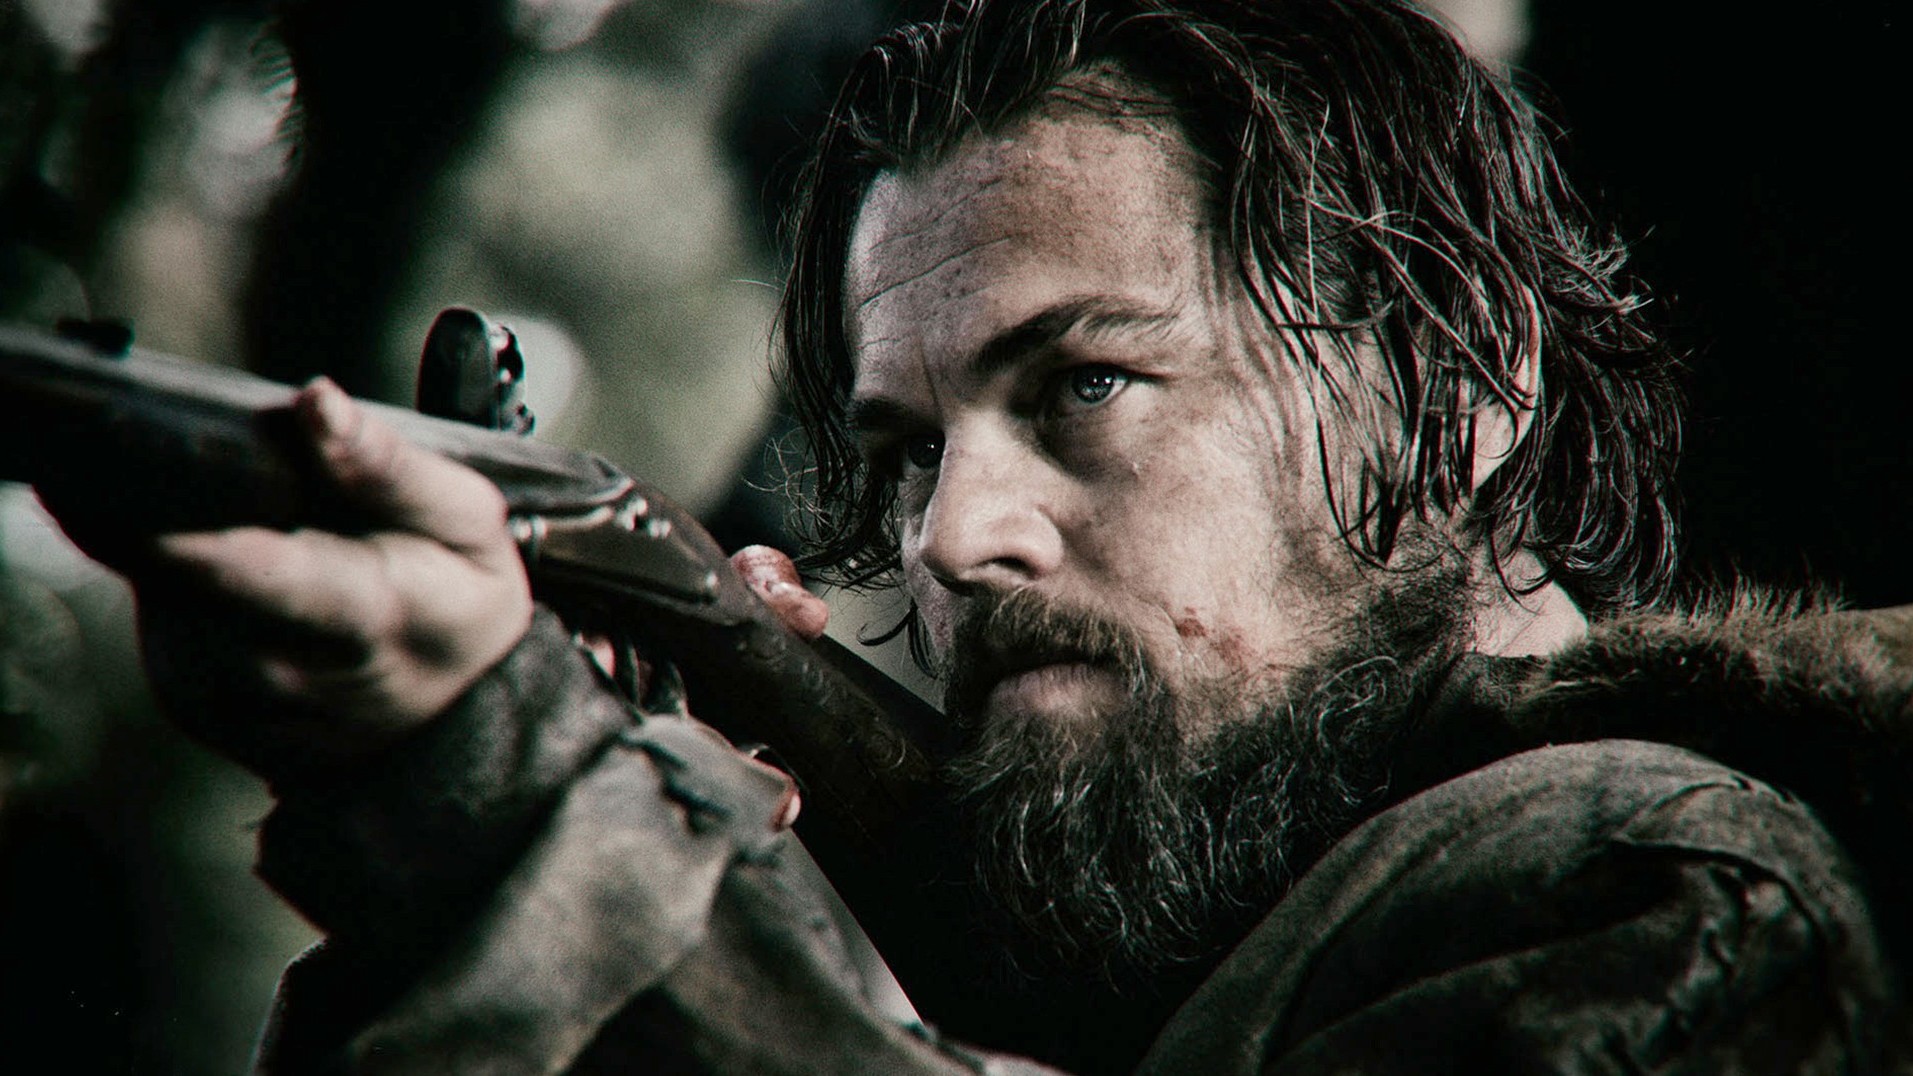 Trailer voor 'The Revenant' met Leonardo DiCaprio en Tom Hardy!